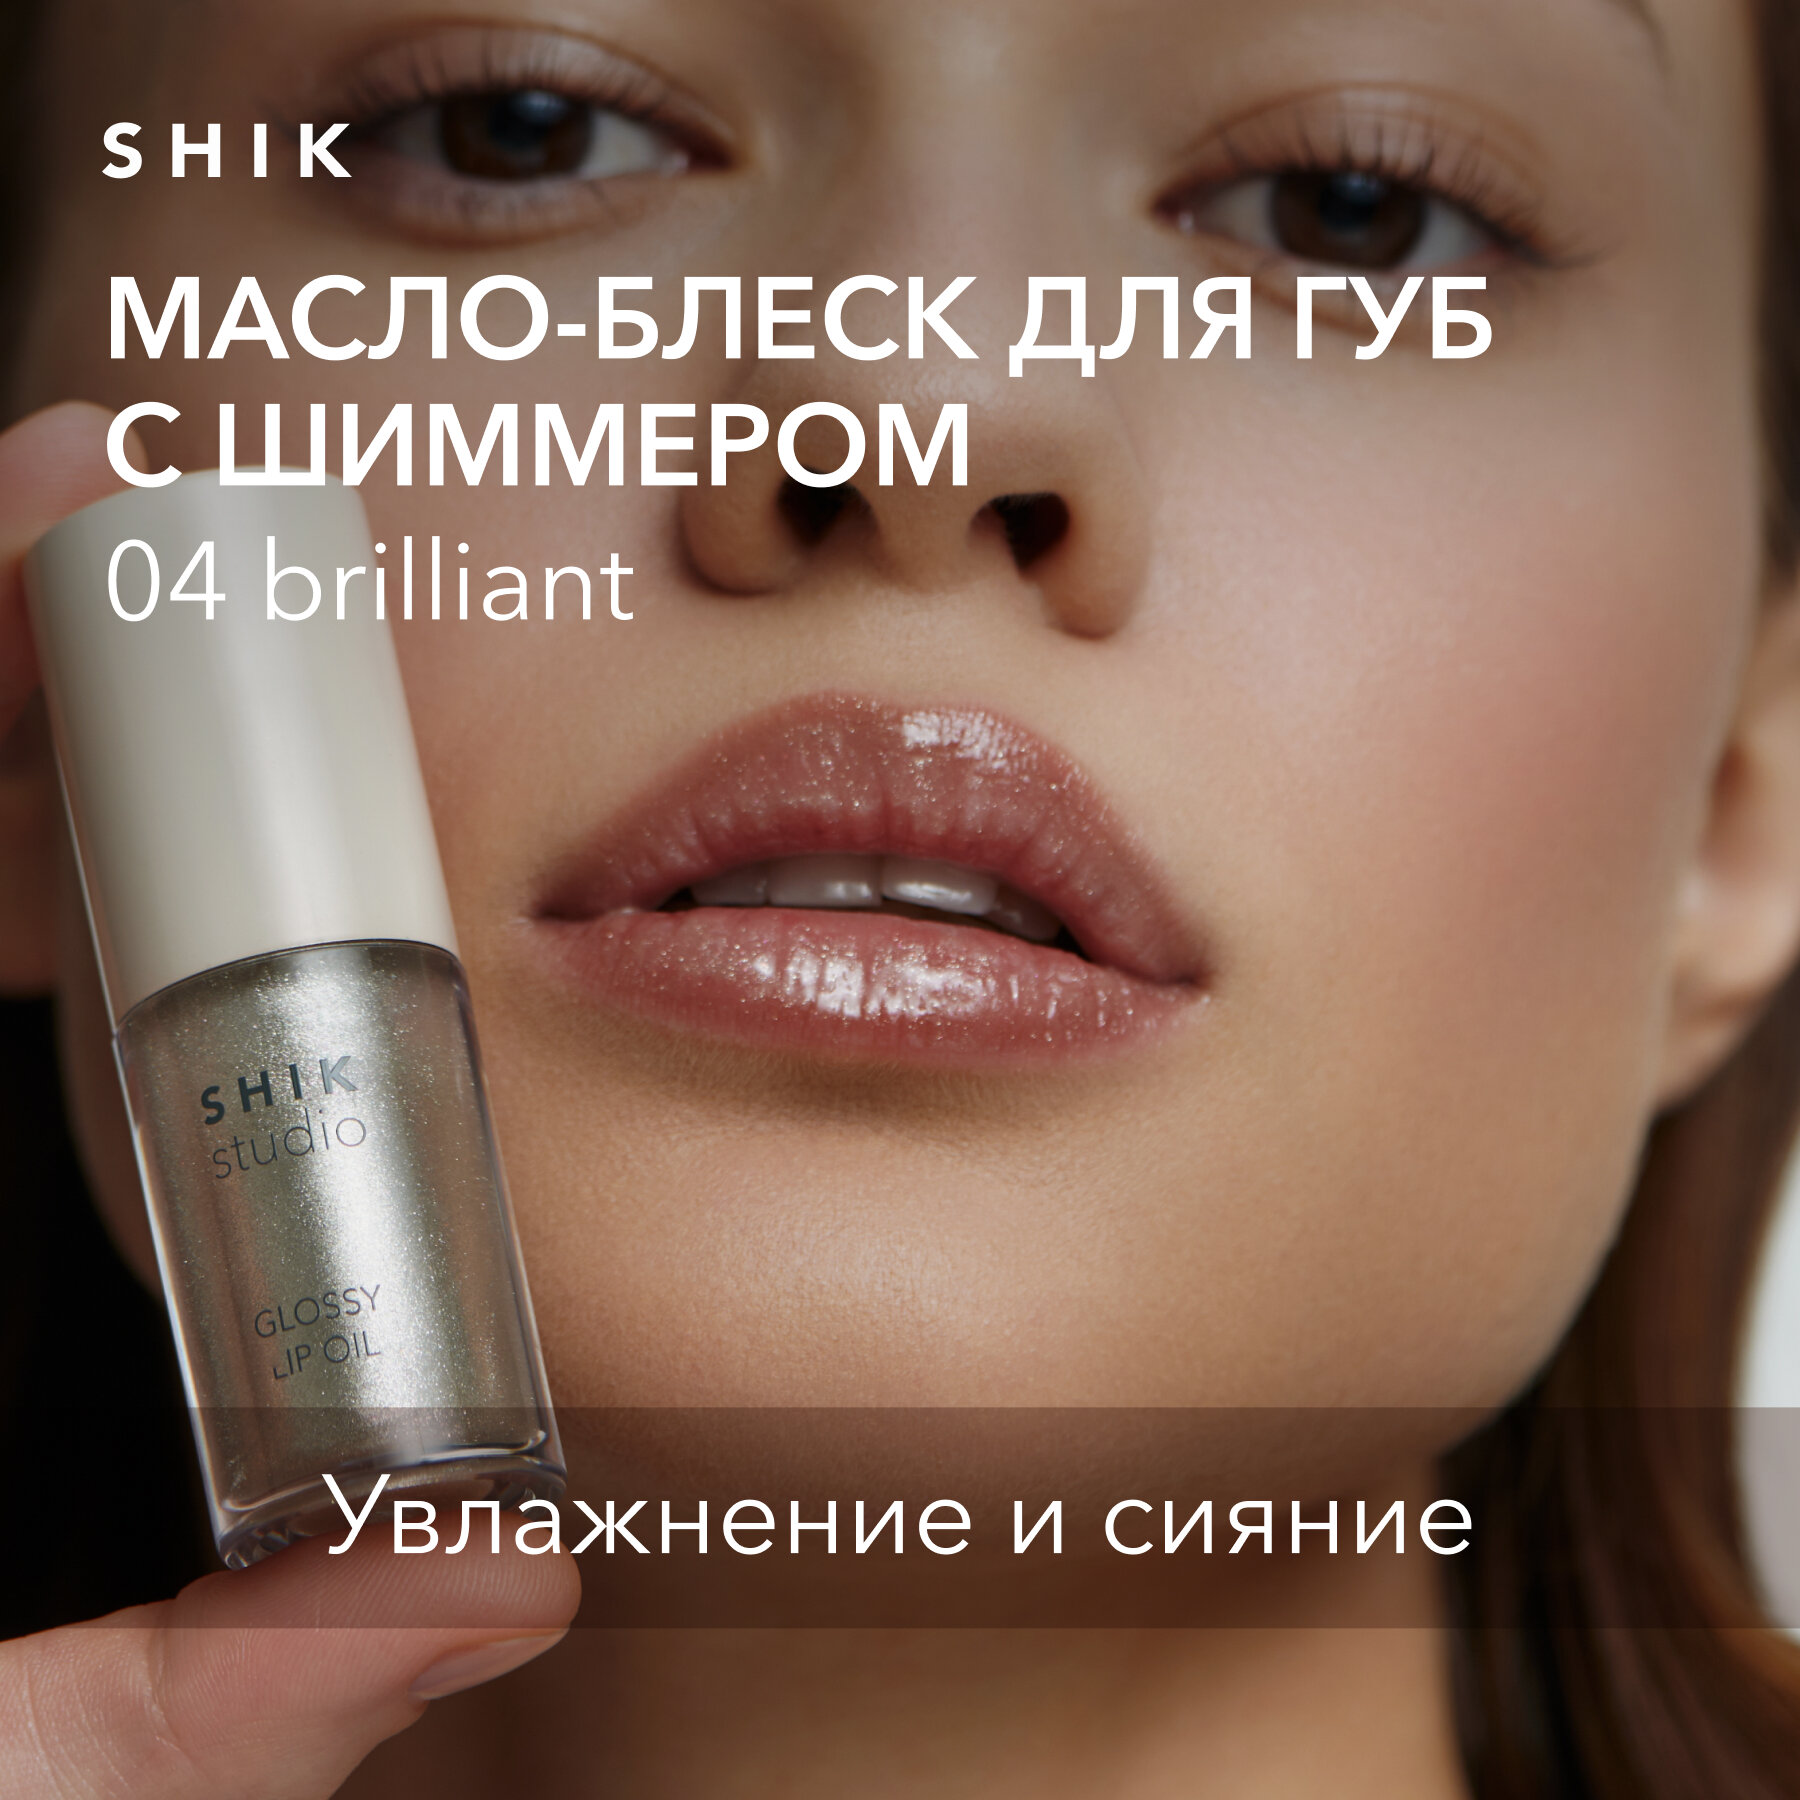 Масло-блеск для губ увлажняющее прозрачное с шиммером, SHIK Glossy lip Oil 04 Brilliant